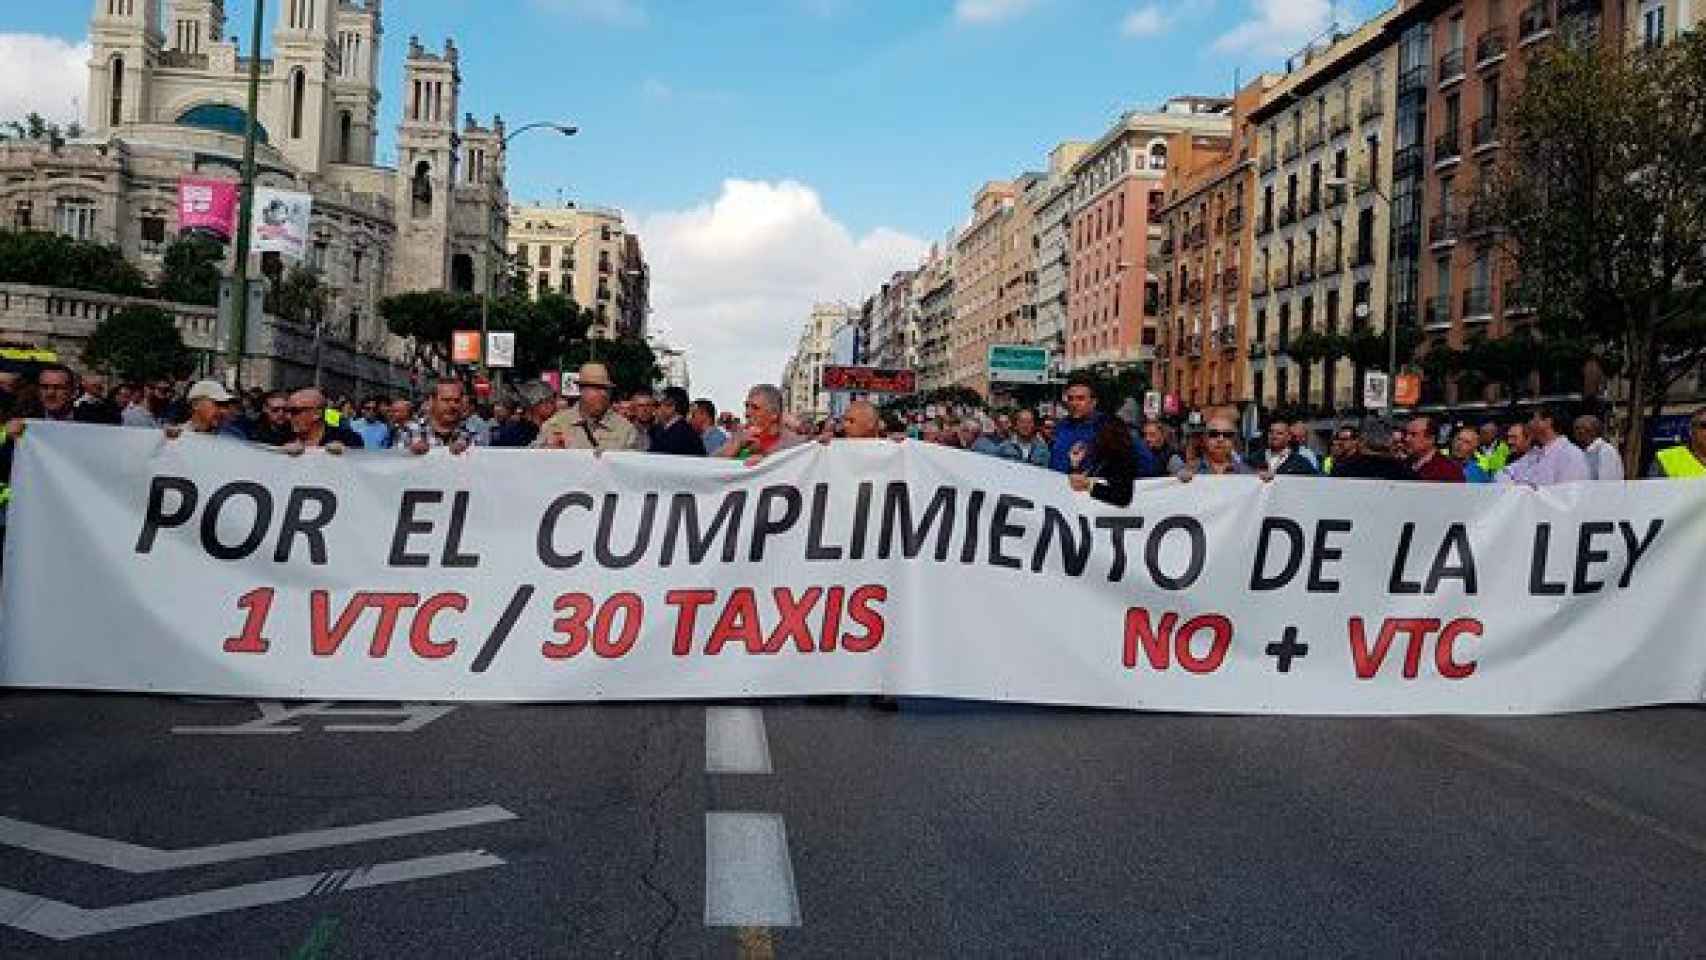 Los taxistas de Madrid protestan contra la competencia desleal de las VTC en una imagen de archivo / CG